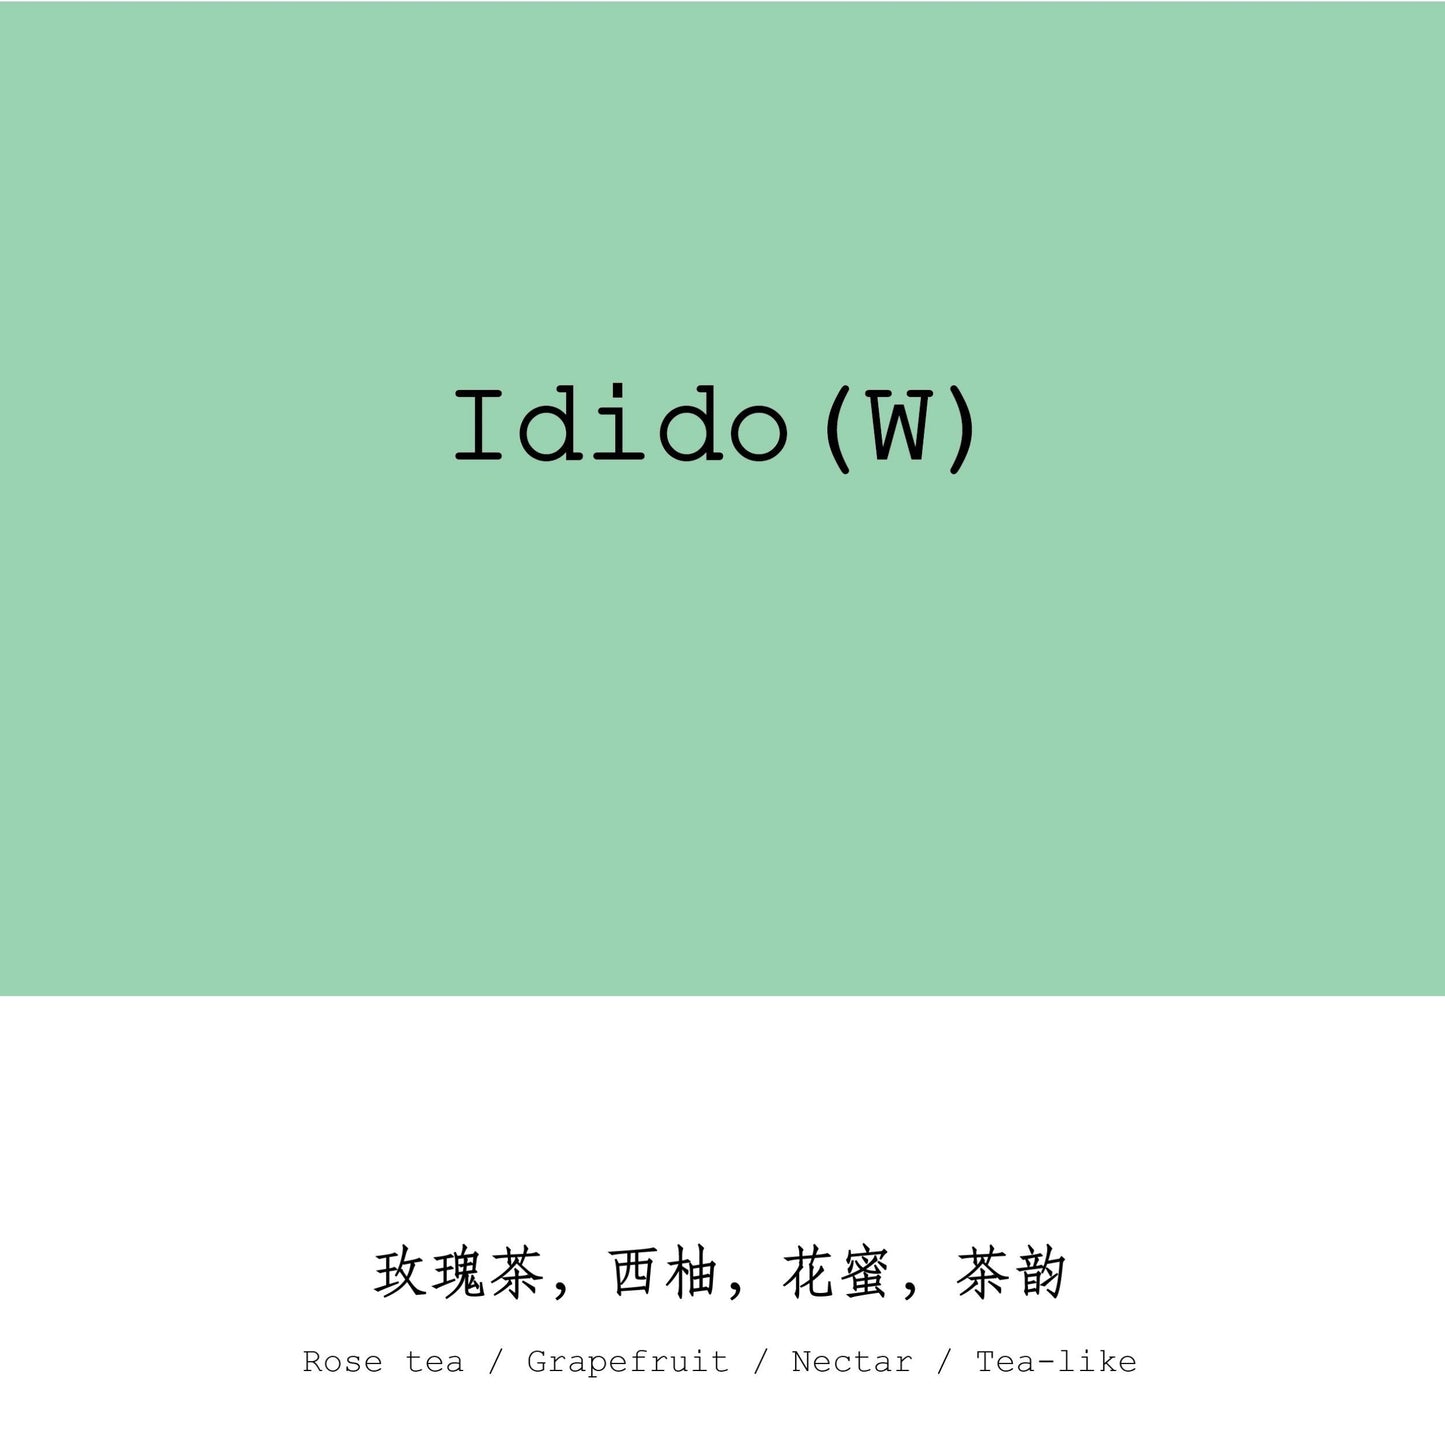 ETHIOPIA - IDIDO (W)